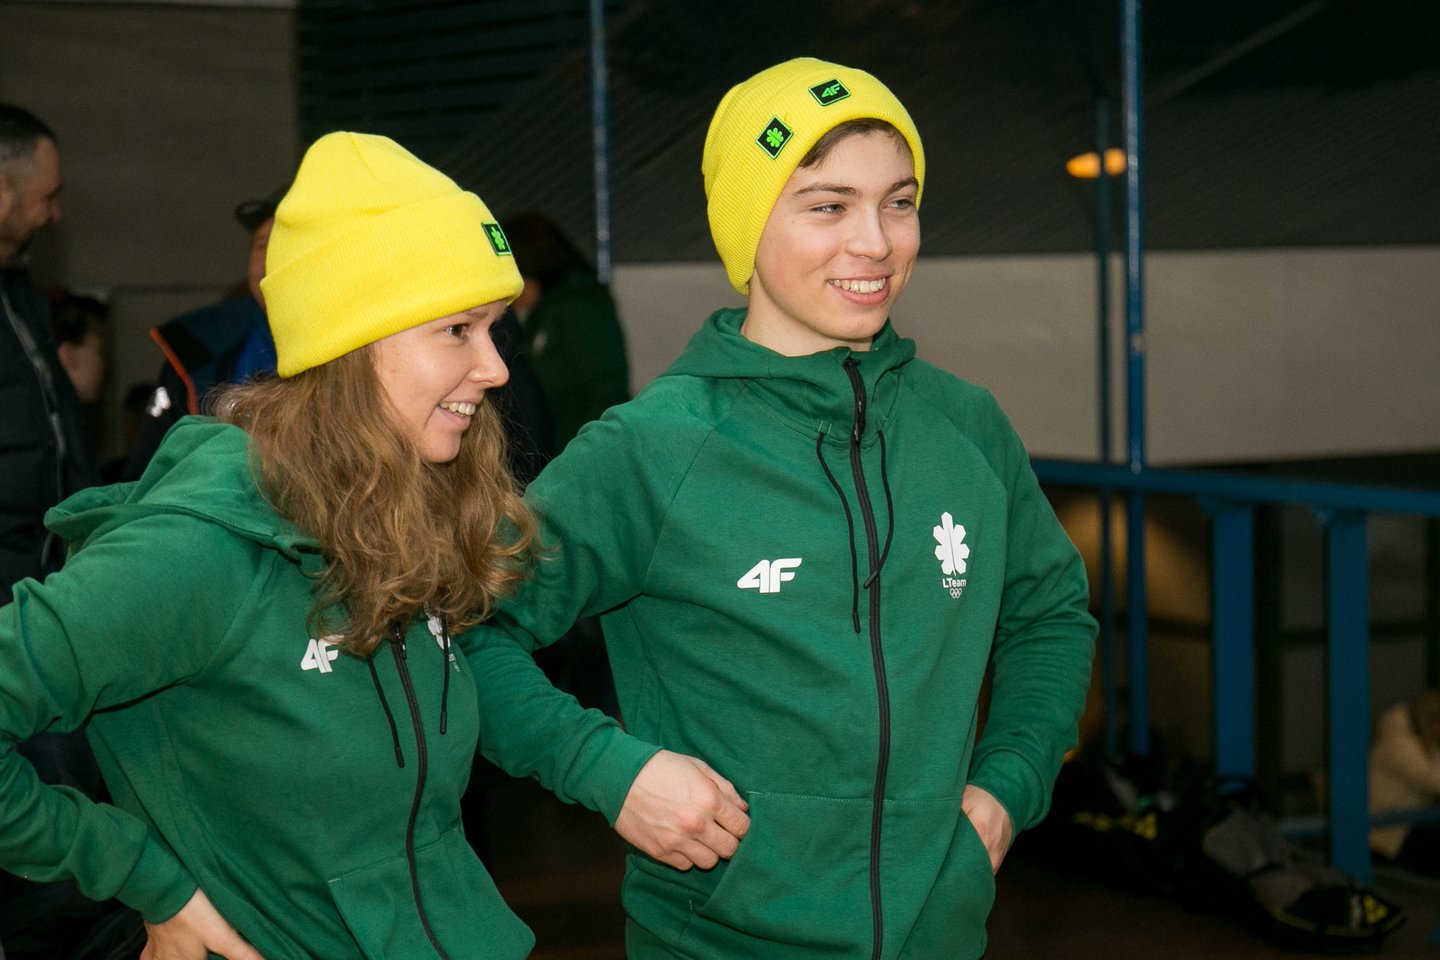  Lietuvos jaunieji sportininkai išlydėti į jaunimo olimpines žaidynes Lozanoje <br> S.Čirbos nuotr.